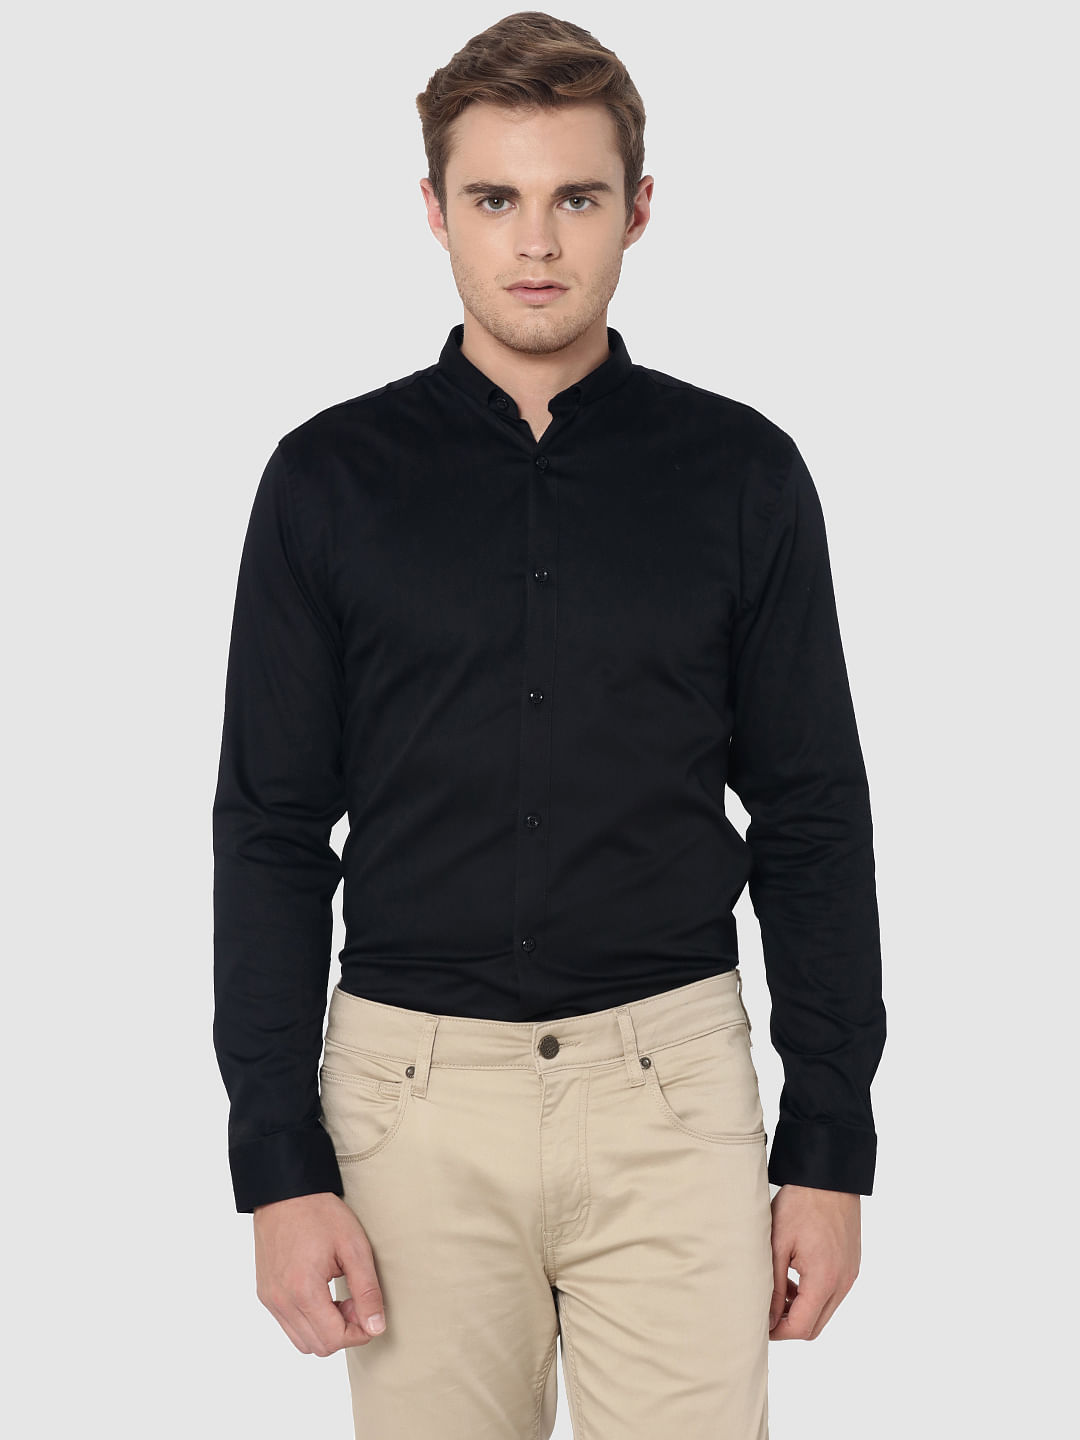 Buy Men Black Slim Fit Solid Full Sleeves Formal Shirt Online - 226720 |  Van Heusen